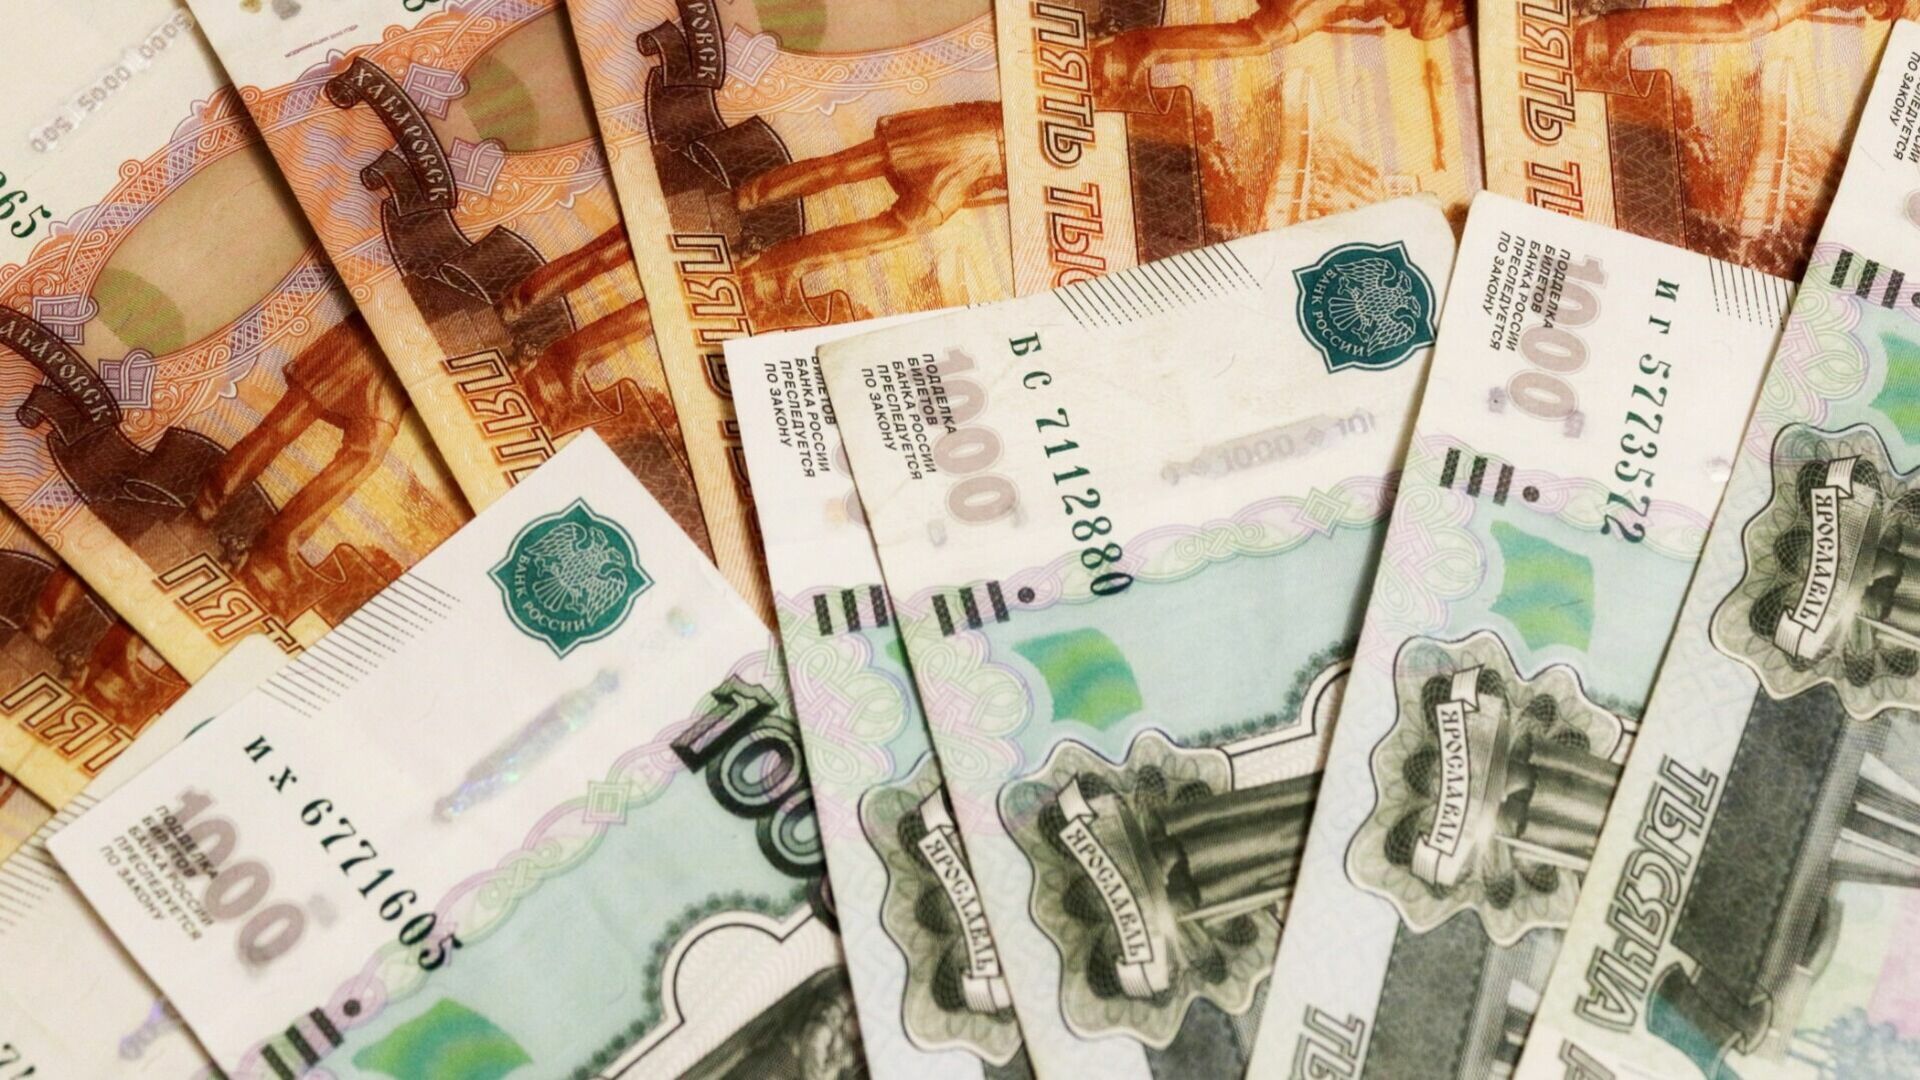 Расходы бюджета Нижнего Новгорода могут быть увеличены на 4,3 млрд рублей